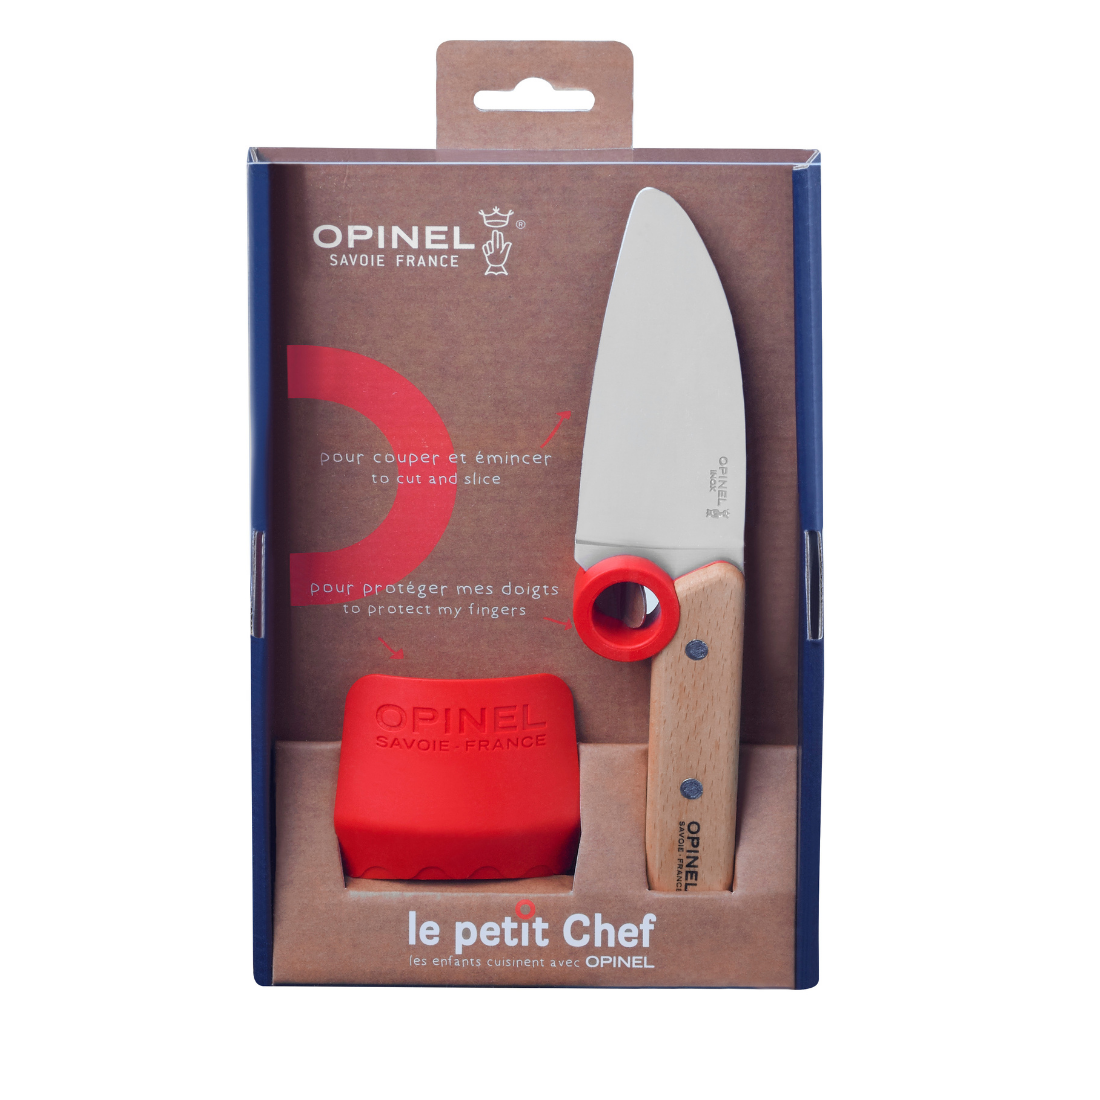 Opinel Le Petit Chef børnekniv med fingerbeskyttelse.